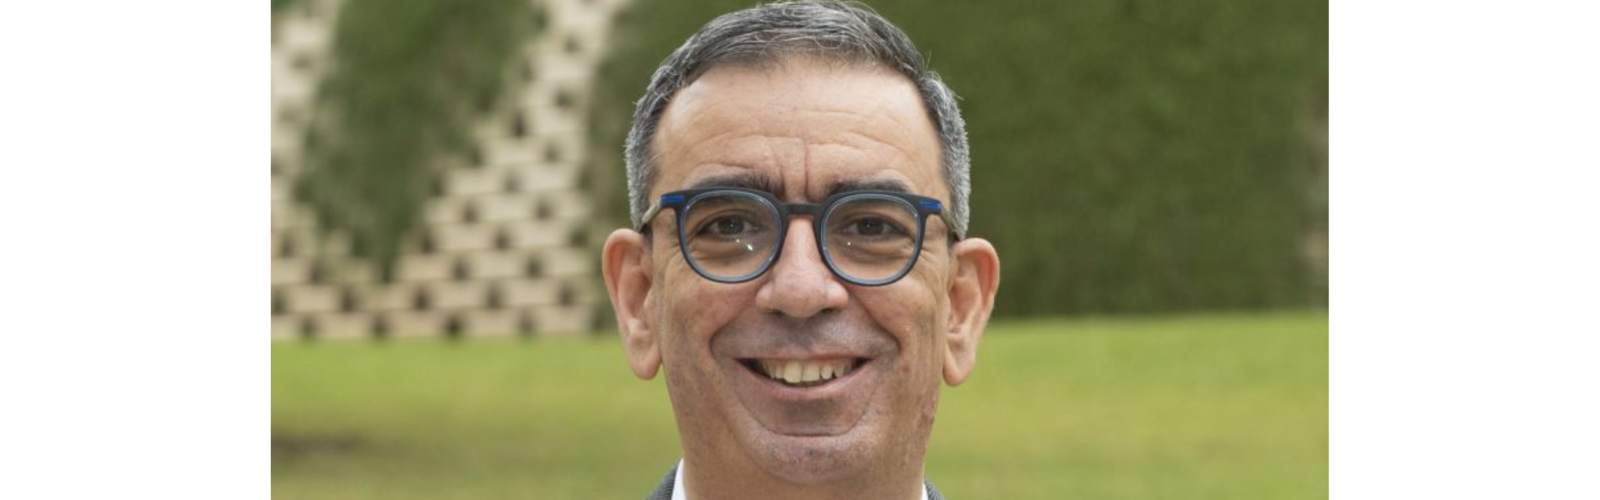 José Manuel López Nicolás, vicerrector de Transferencia, Comunicación y Divulgación Científica de la UMU ingresa en la Academia de Gastronomía de la Región de Murcia